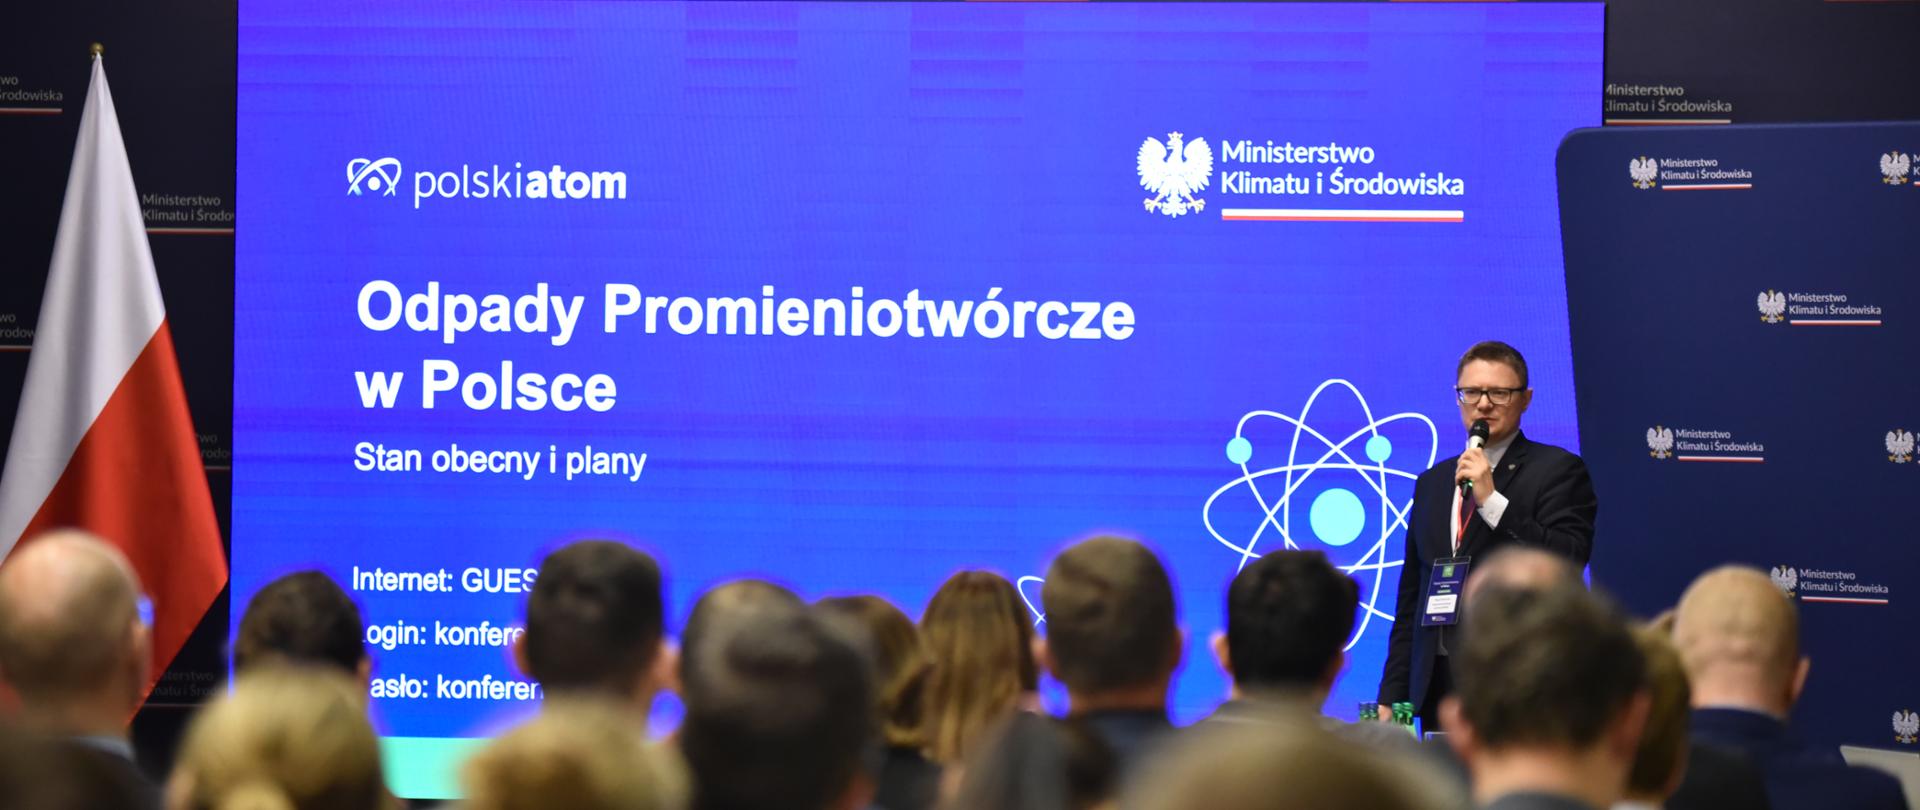 konferencja odpady promieniotwórcze w Polsce